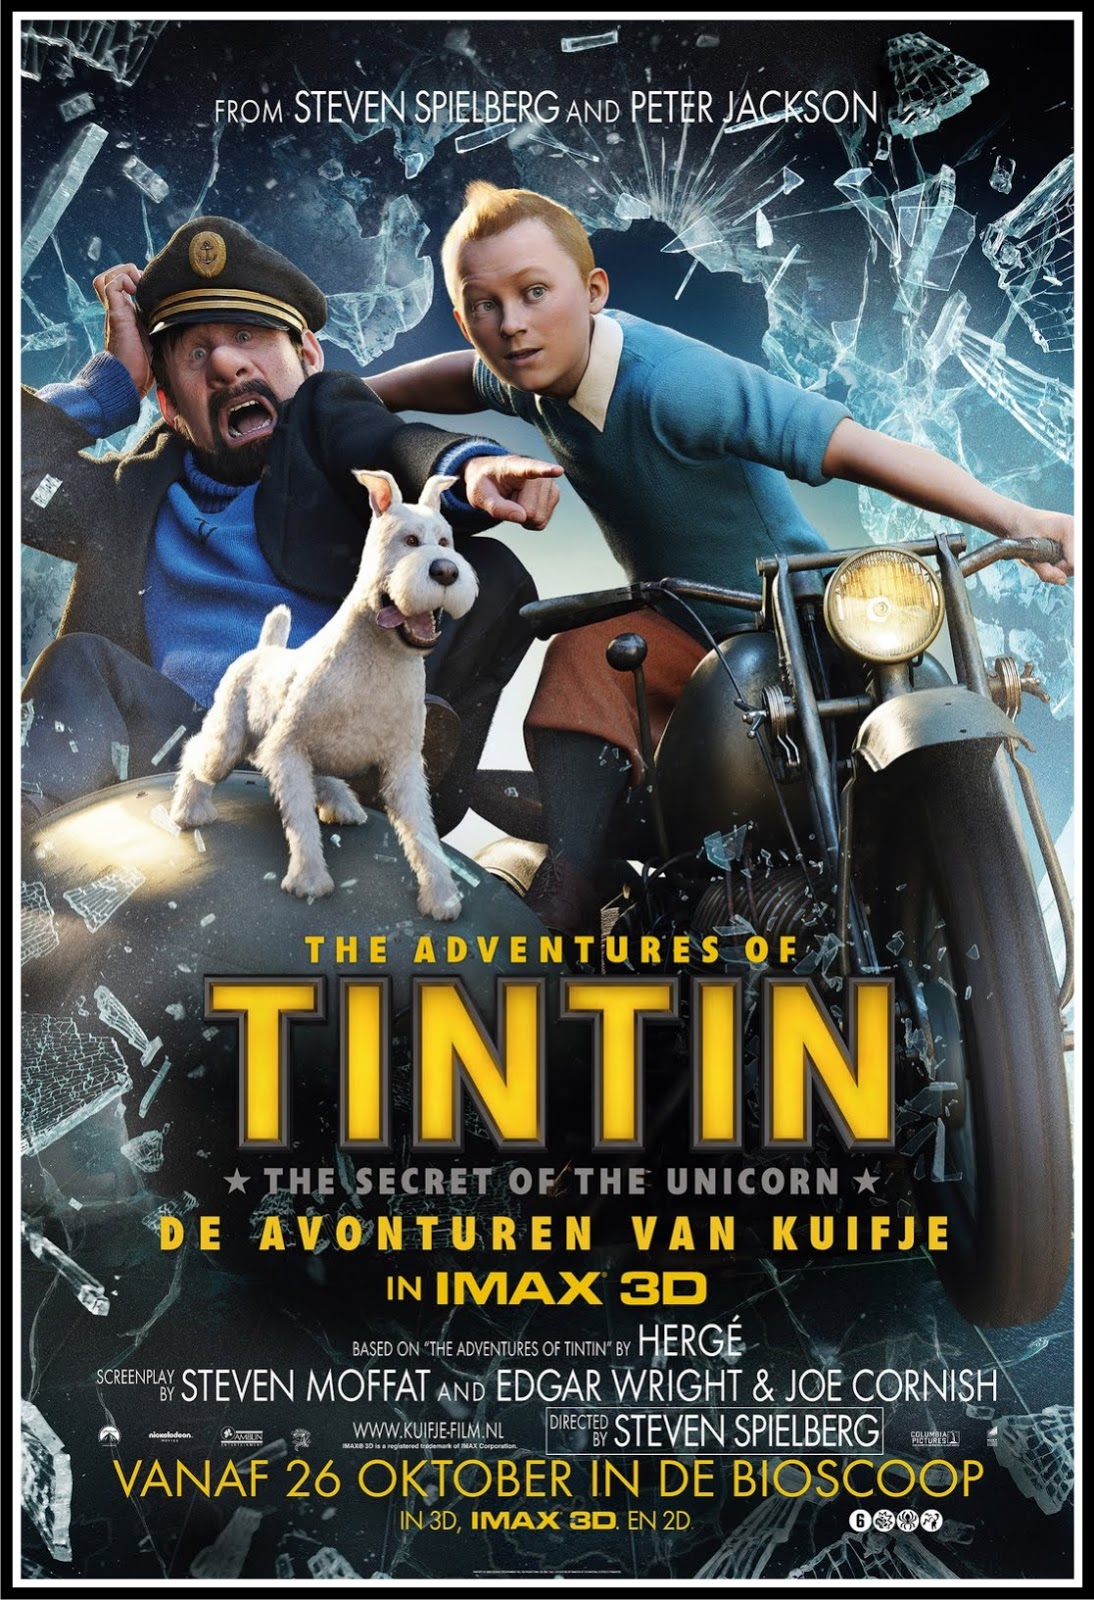 Иди тин тин тин. Приключения Тинтина: тайна единорога (2011). Приключения Тинтина тайна единорога 2011 Постер.